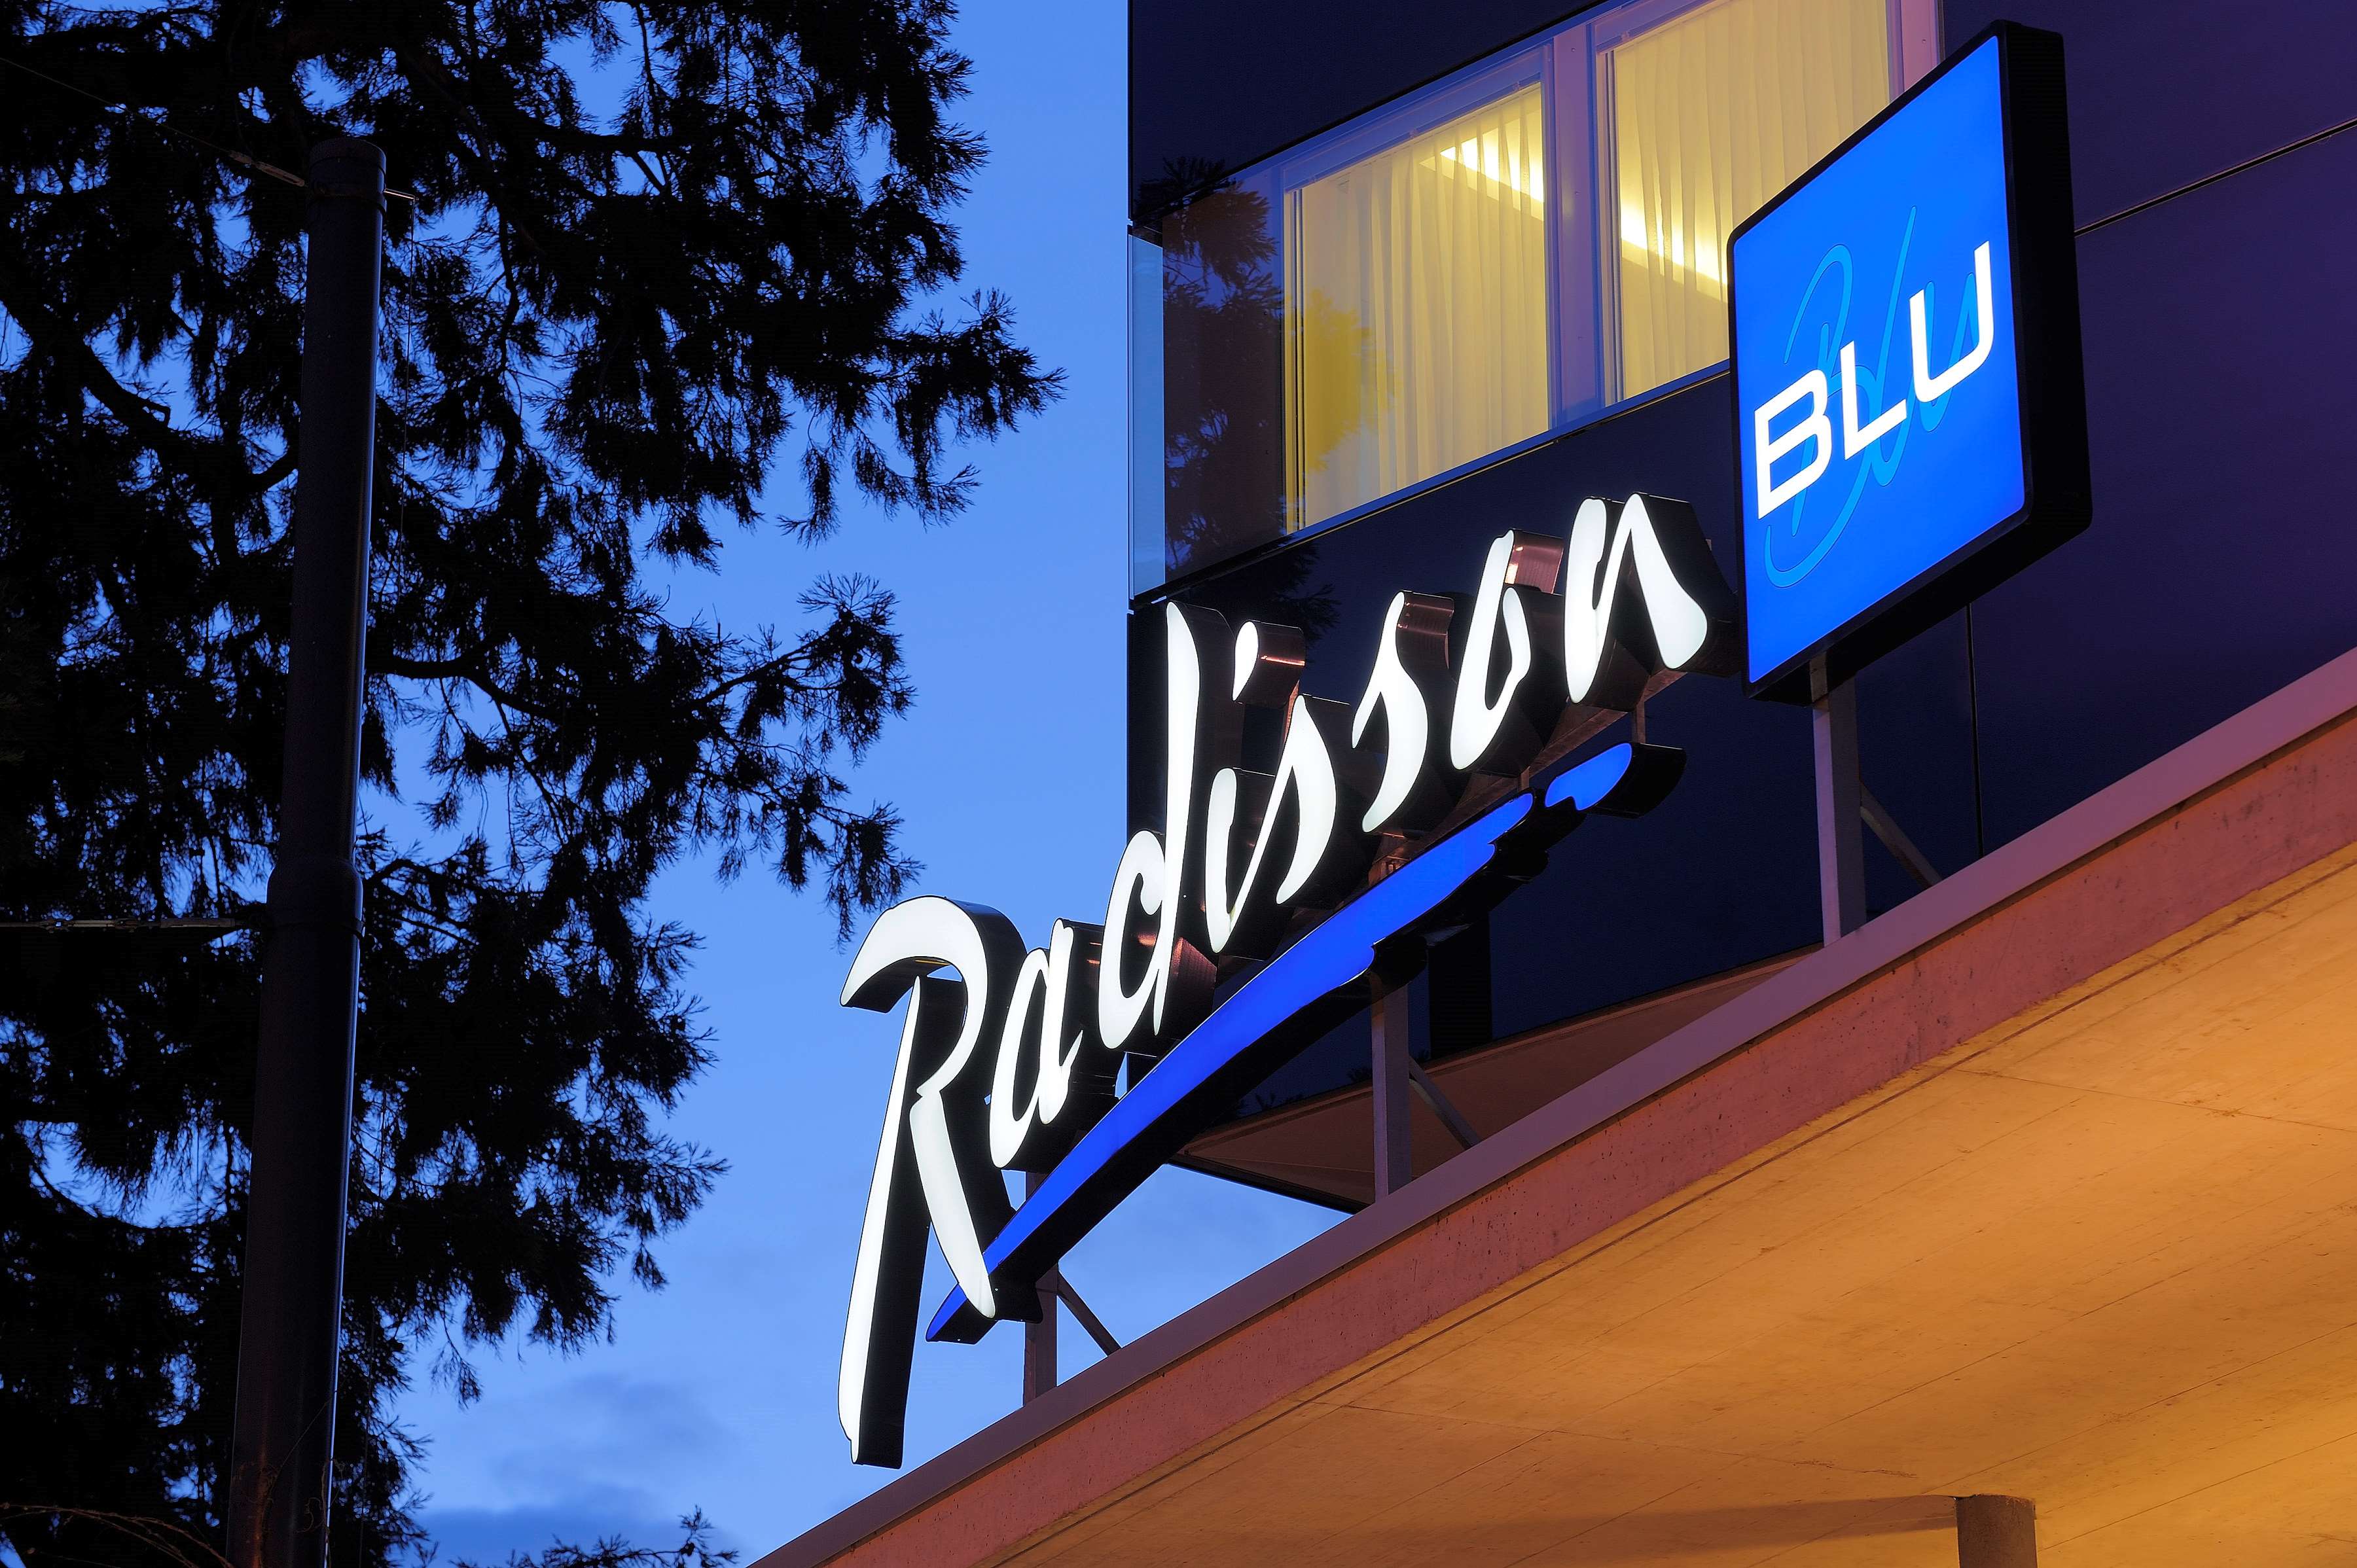 Bilder Radisson Blu Hotel, St. Gallen